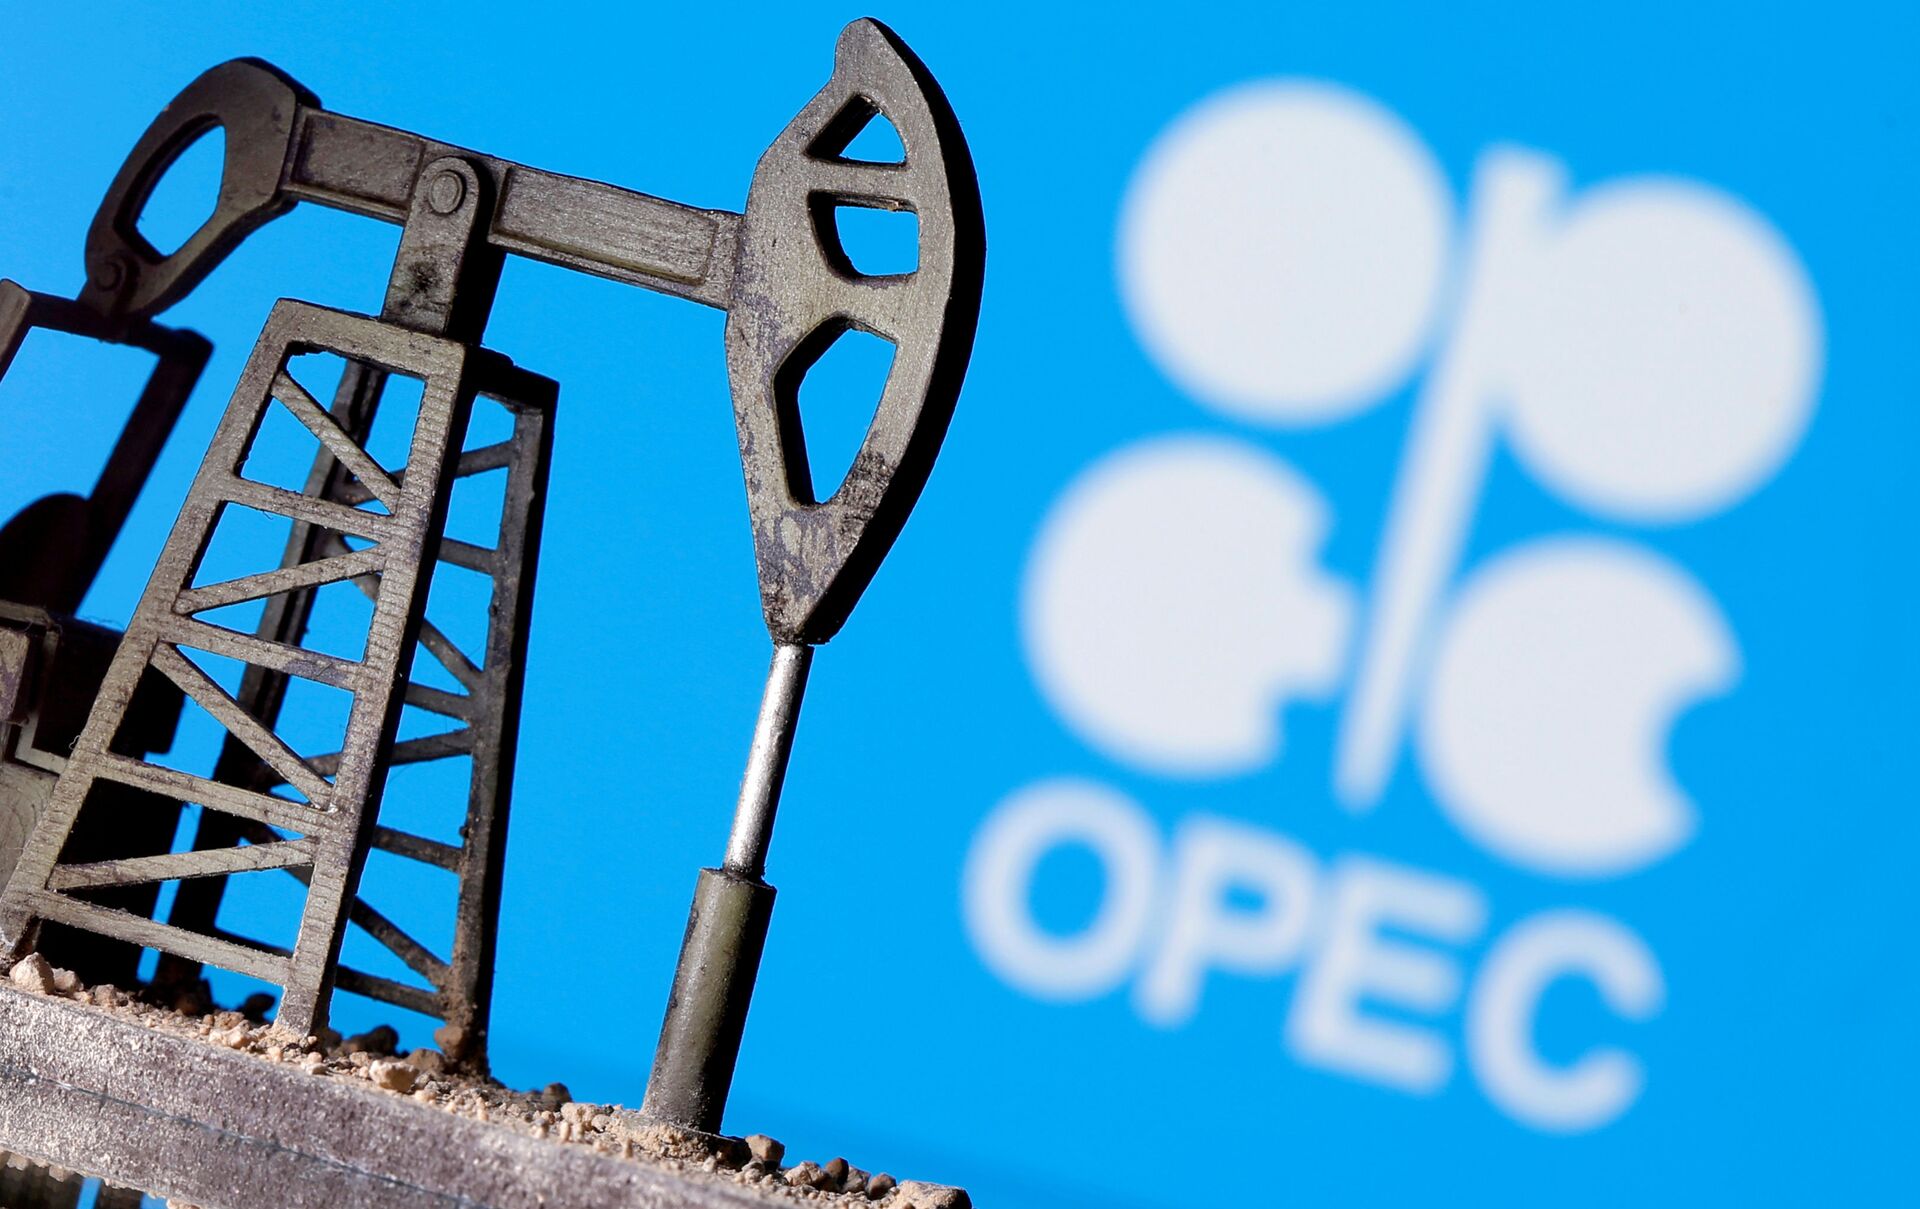 Ao recusar proposta da OPEP, EAU estão se preparando para mundo pós-petróleo, diz mídia - Sputnik Brasil, 1920, 12.07.2021